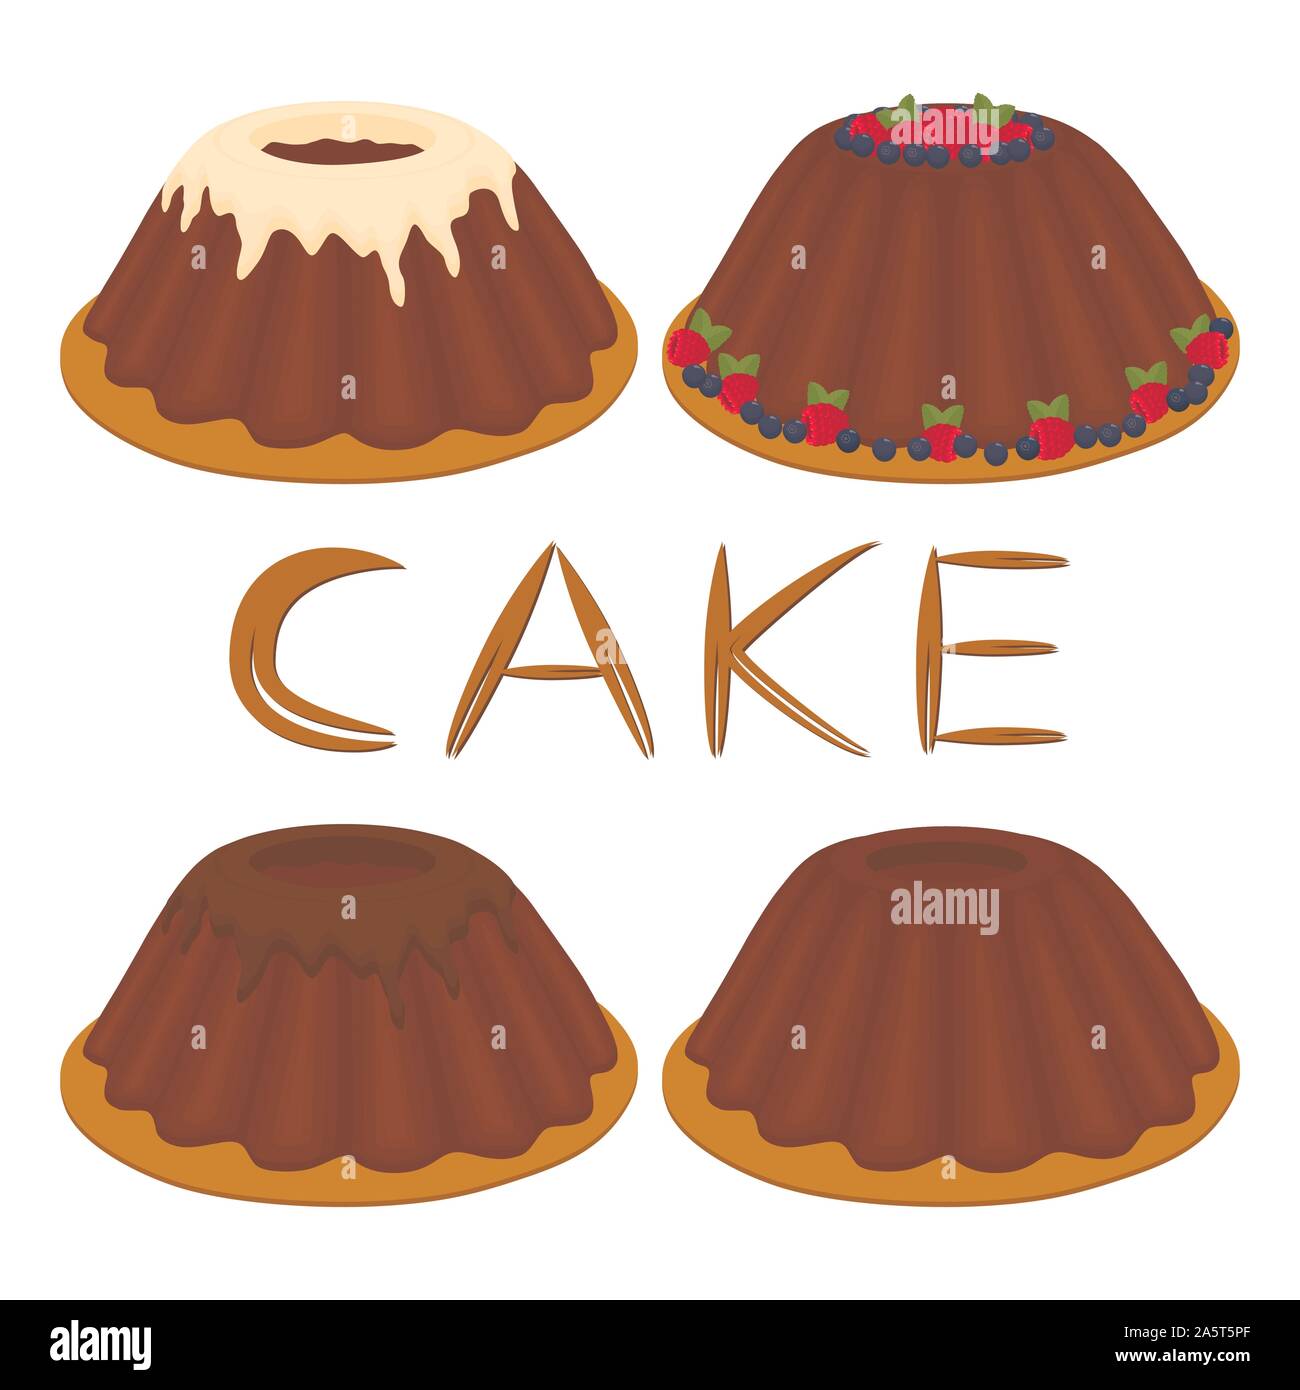 Illustrazione Vettoriale logo per impostare tutto il dessert fatti in casa torta. La torta è costituita da cotto naturale dolce pasticceria è decorata frutti di bosco Lamponi. Mangiare Illustrazione Vettoriale